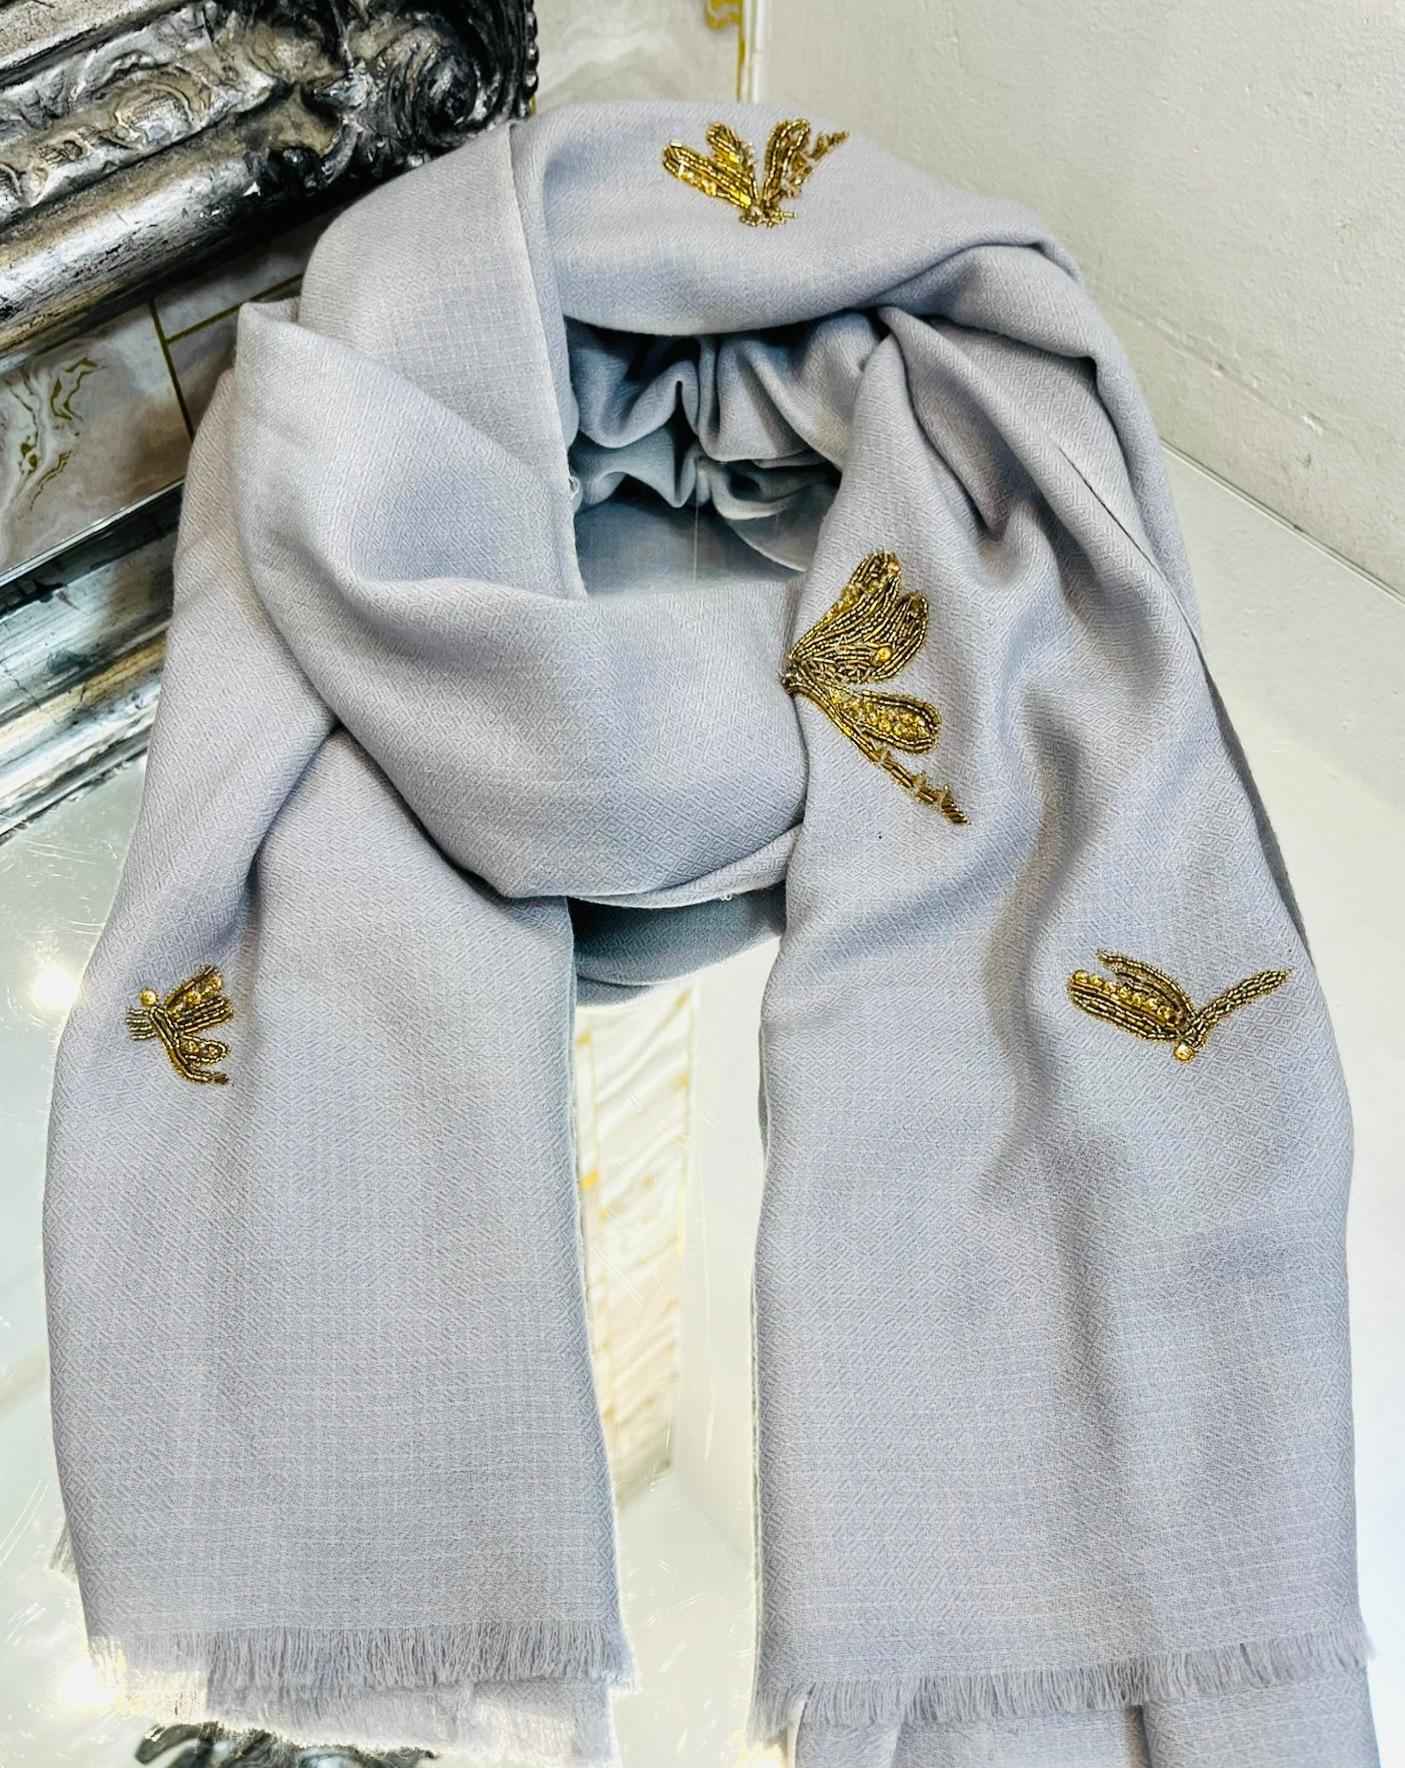 Bufanda de lana merina Janavi Beaded Dragonfly

Pañuelo gris hecho a mano con motivos de libélulas de cuentas doradas y marrones.

Con adornos de flecos y textura suavemente cepillada.

Tamaño - 198 cm x 136 cm

Estado - Bueno (signos generales de